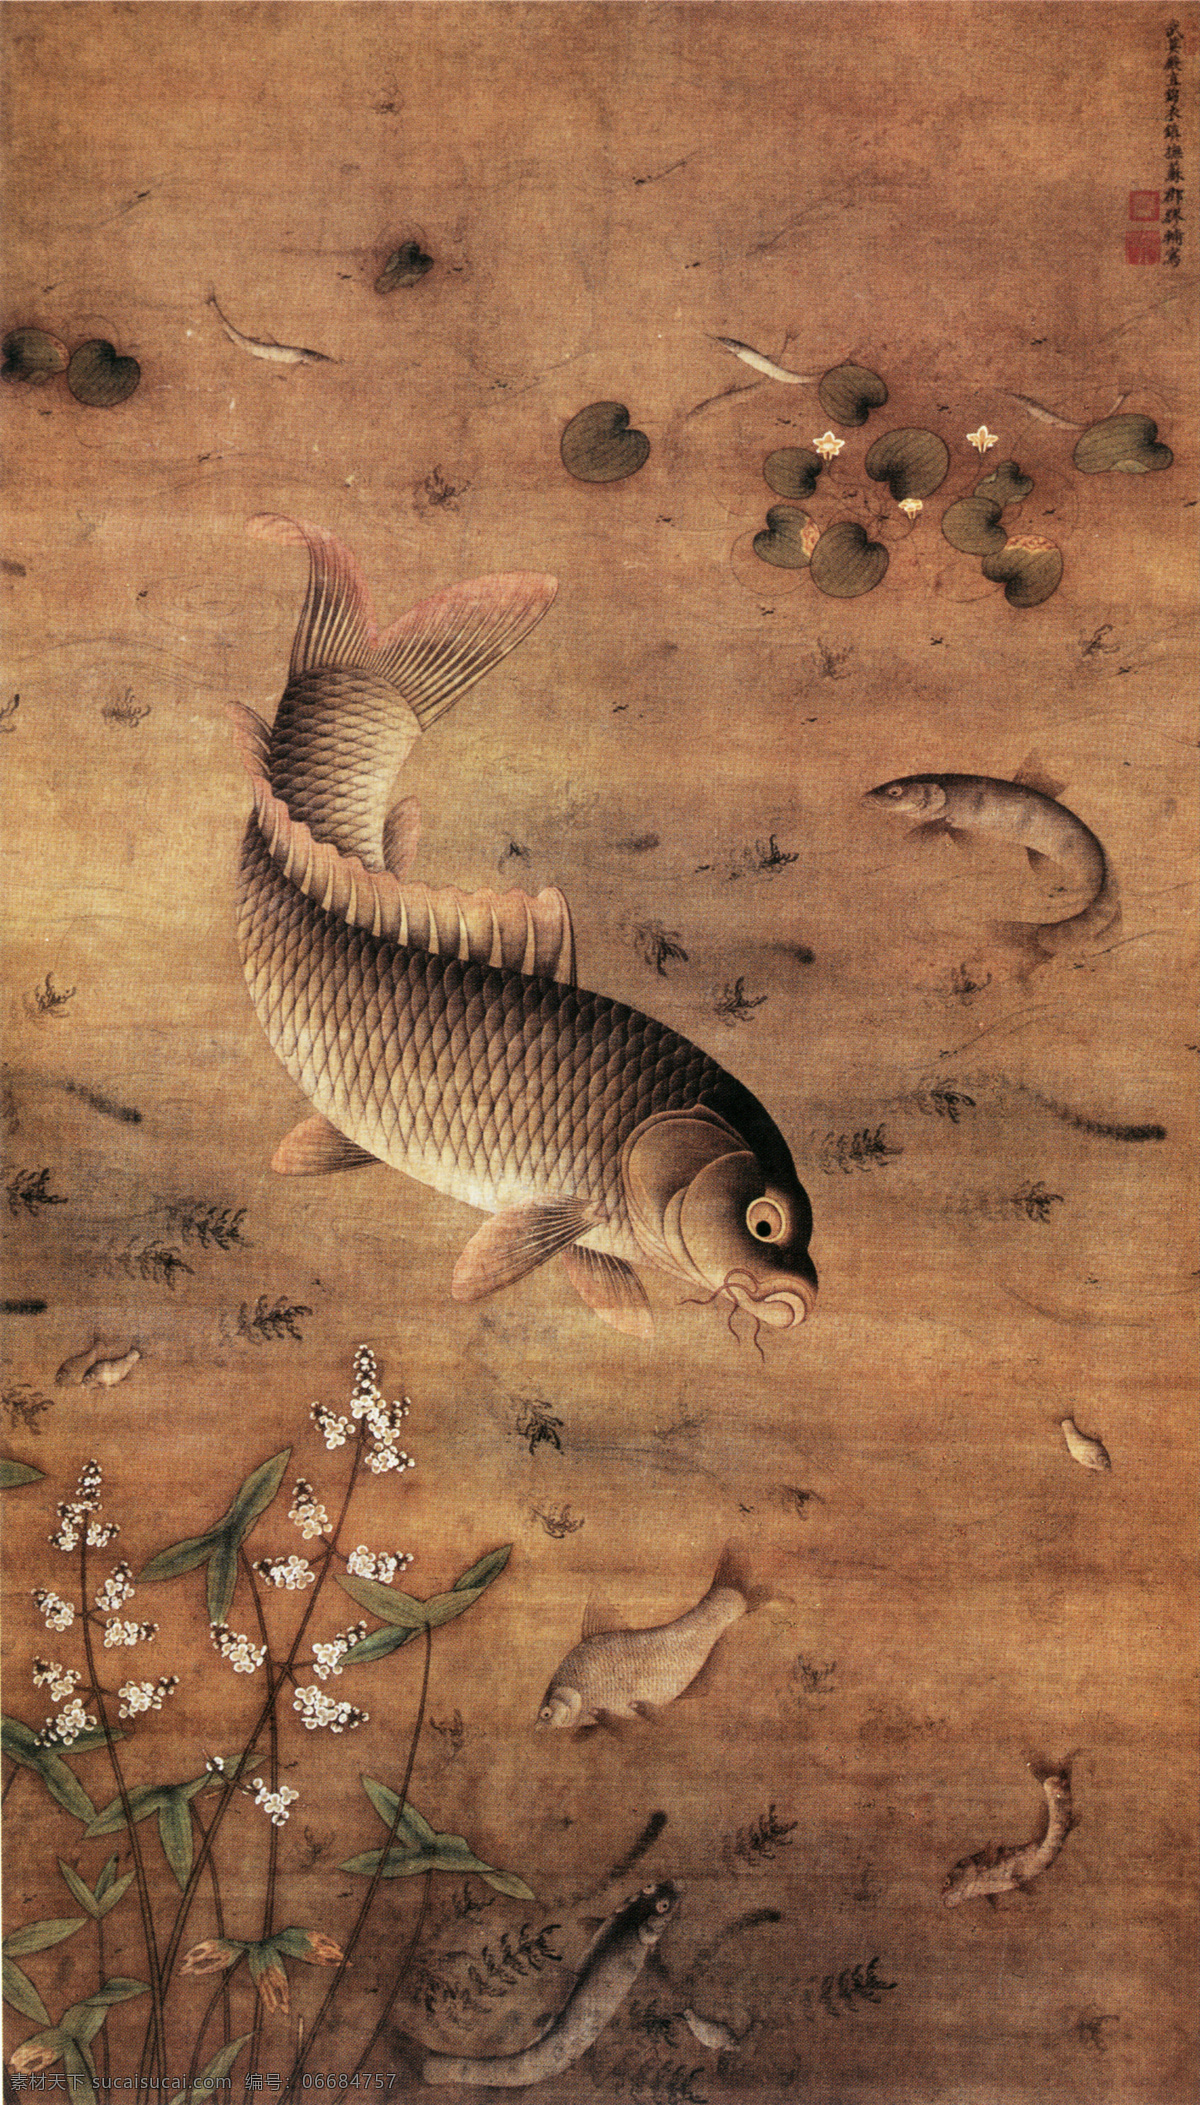 鱼藻图 花鸟画 中国 古画 中国古画 设计素材 花鸟名画 古典藏画 书画美术 棕色